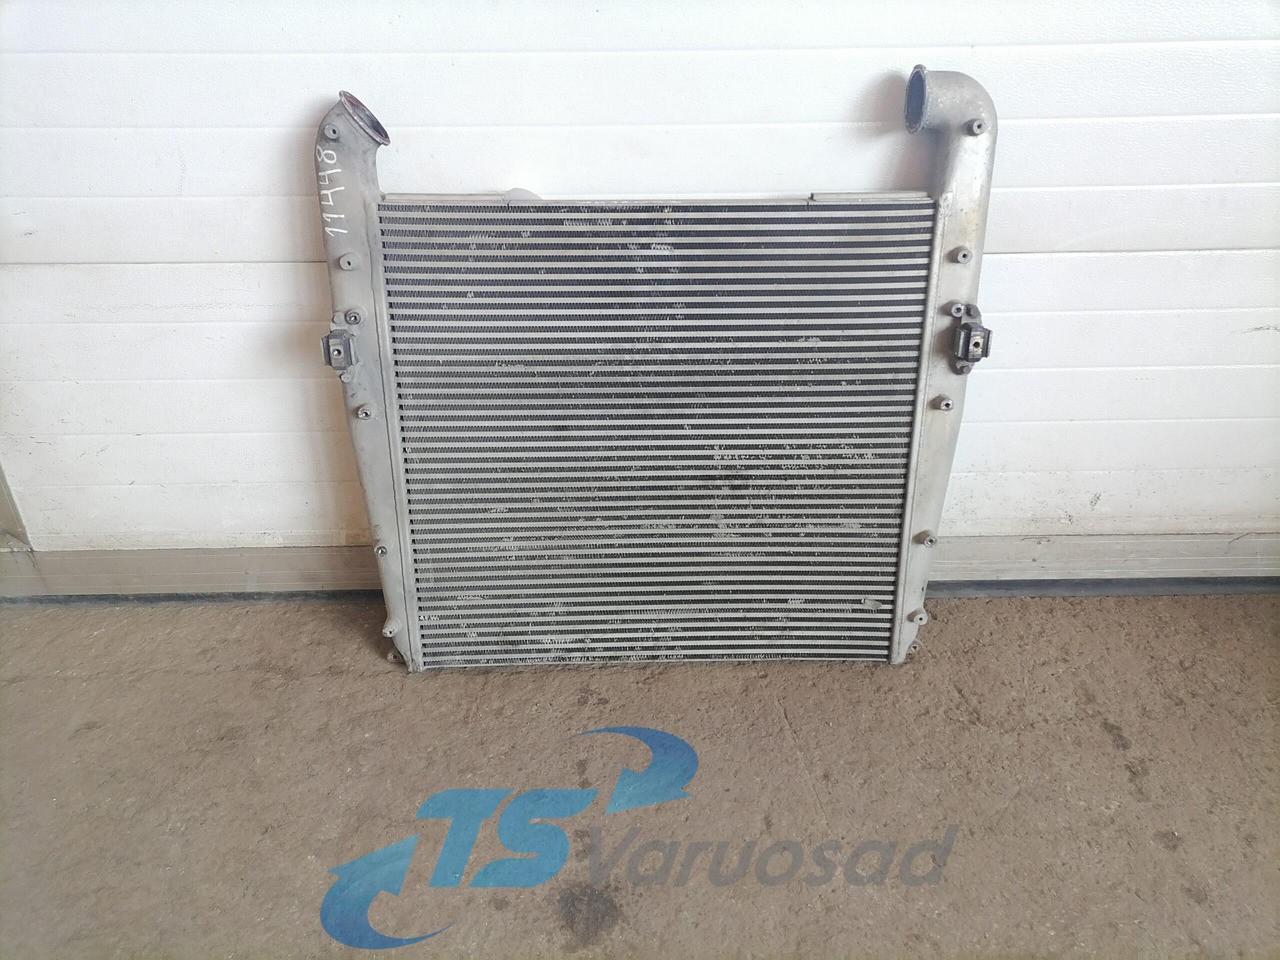 Інтеркулер в категорії Вантажівки Scania Intercooler radiator DASC001TT: фото 2